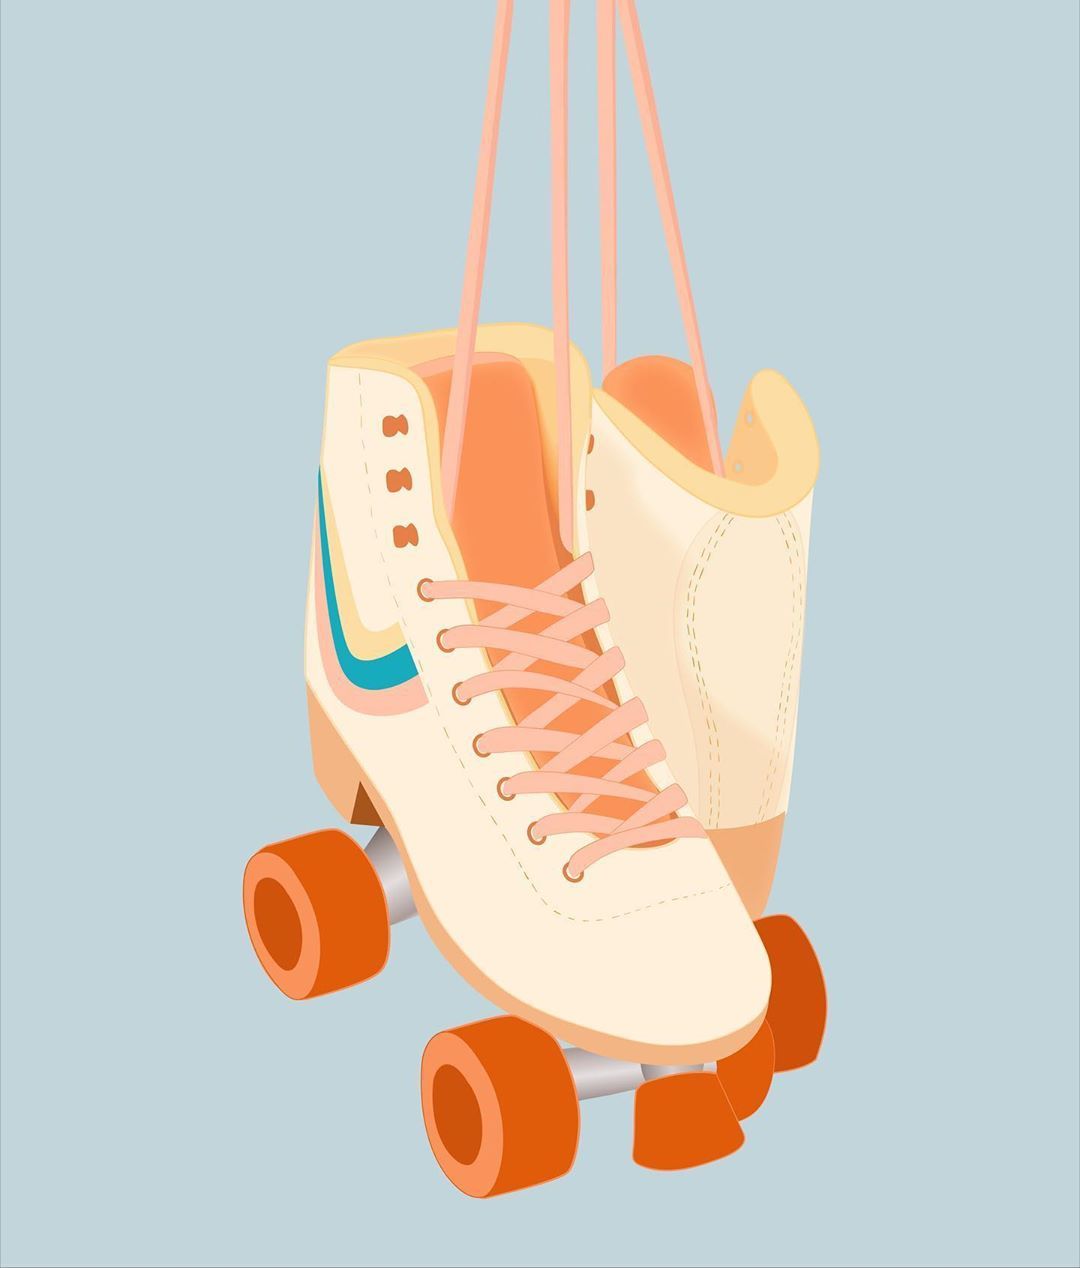 Laurasheltondesigns on instagram retro roller skates roller skating skate aesthetic wallpaper